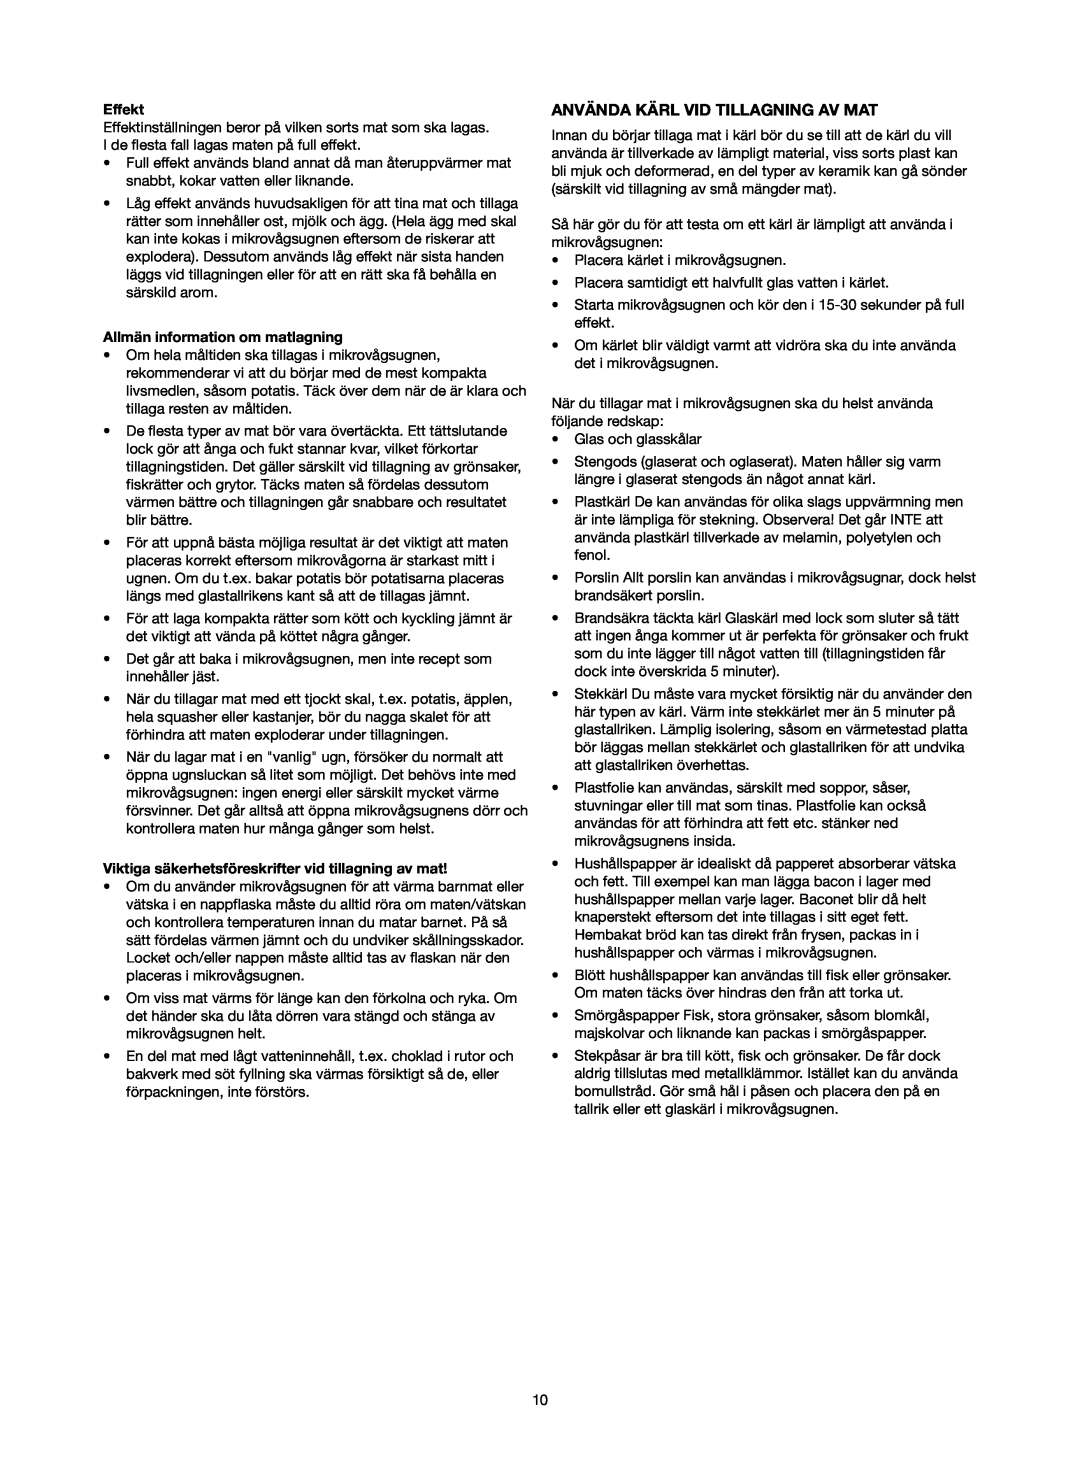 Melissa 753-084 manual Använda Kärl Vid Tillagning Av Mat, Effekt, Allmän information om matlagning 